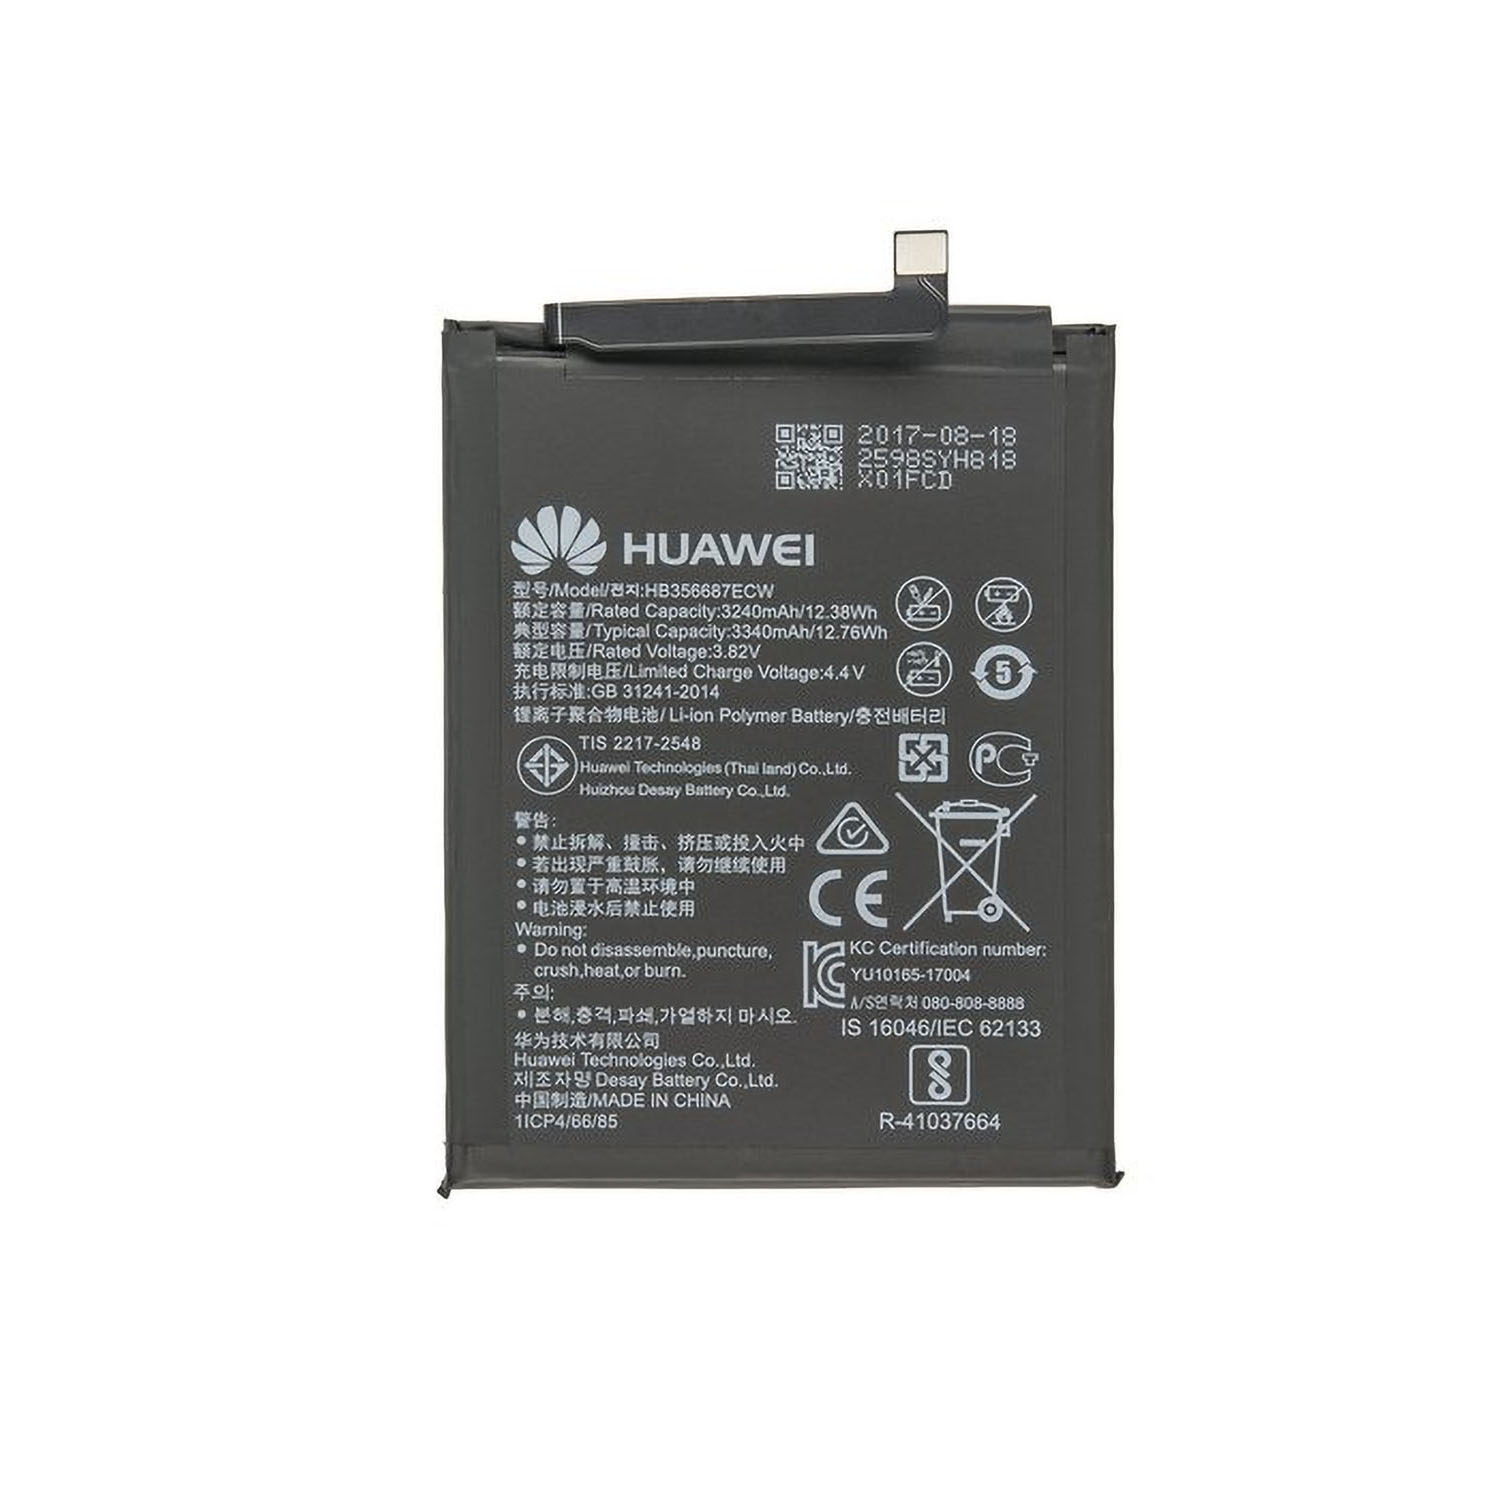 Lite 3340 mAh HUAWEI Li-Pol für Handy-/Smartphoneakku, 10 3.8 Huawei Akku Mate Li-Pol, Volt, Original